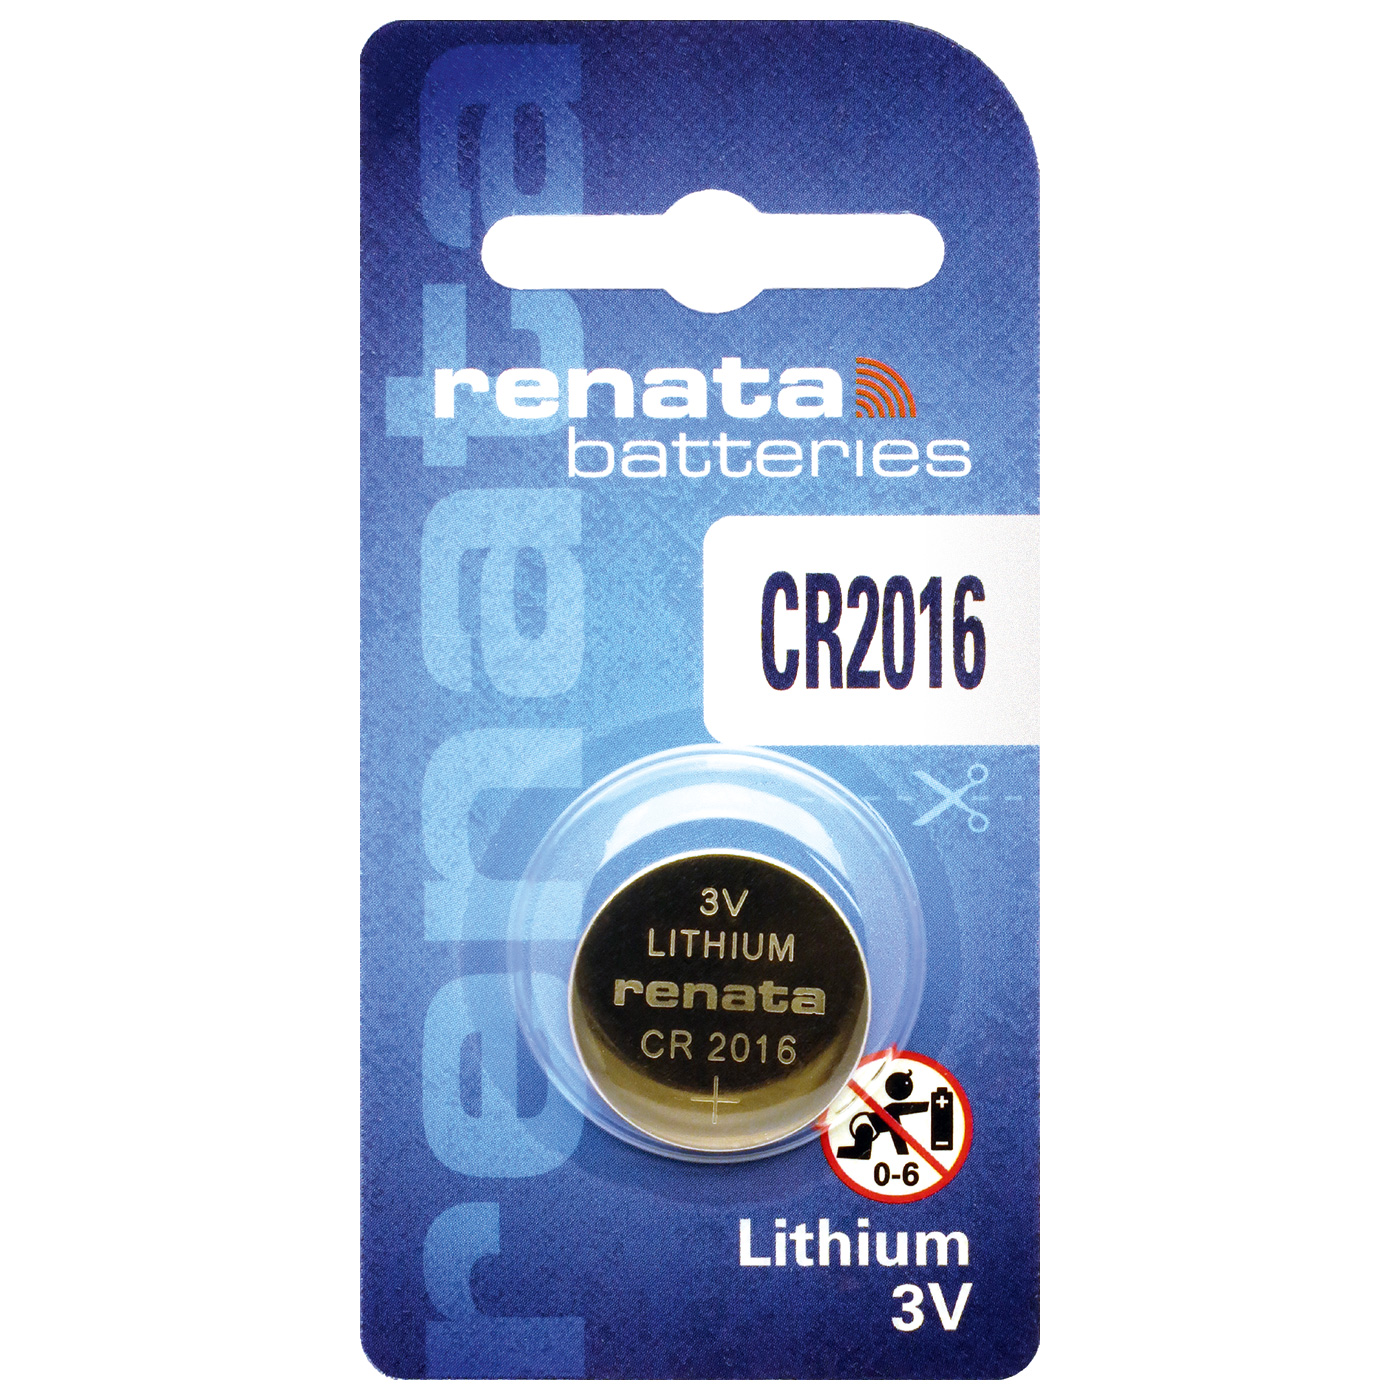 Renata CR 2016 lithium